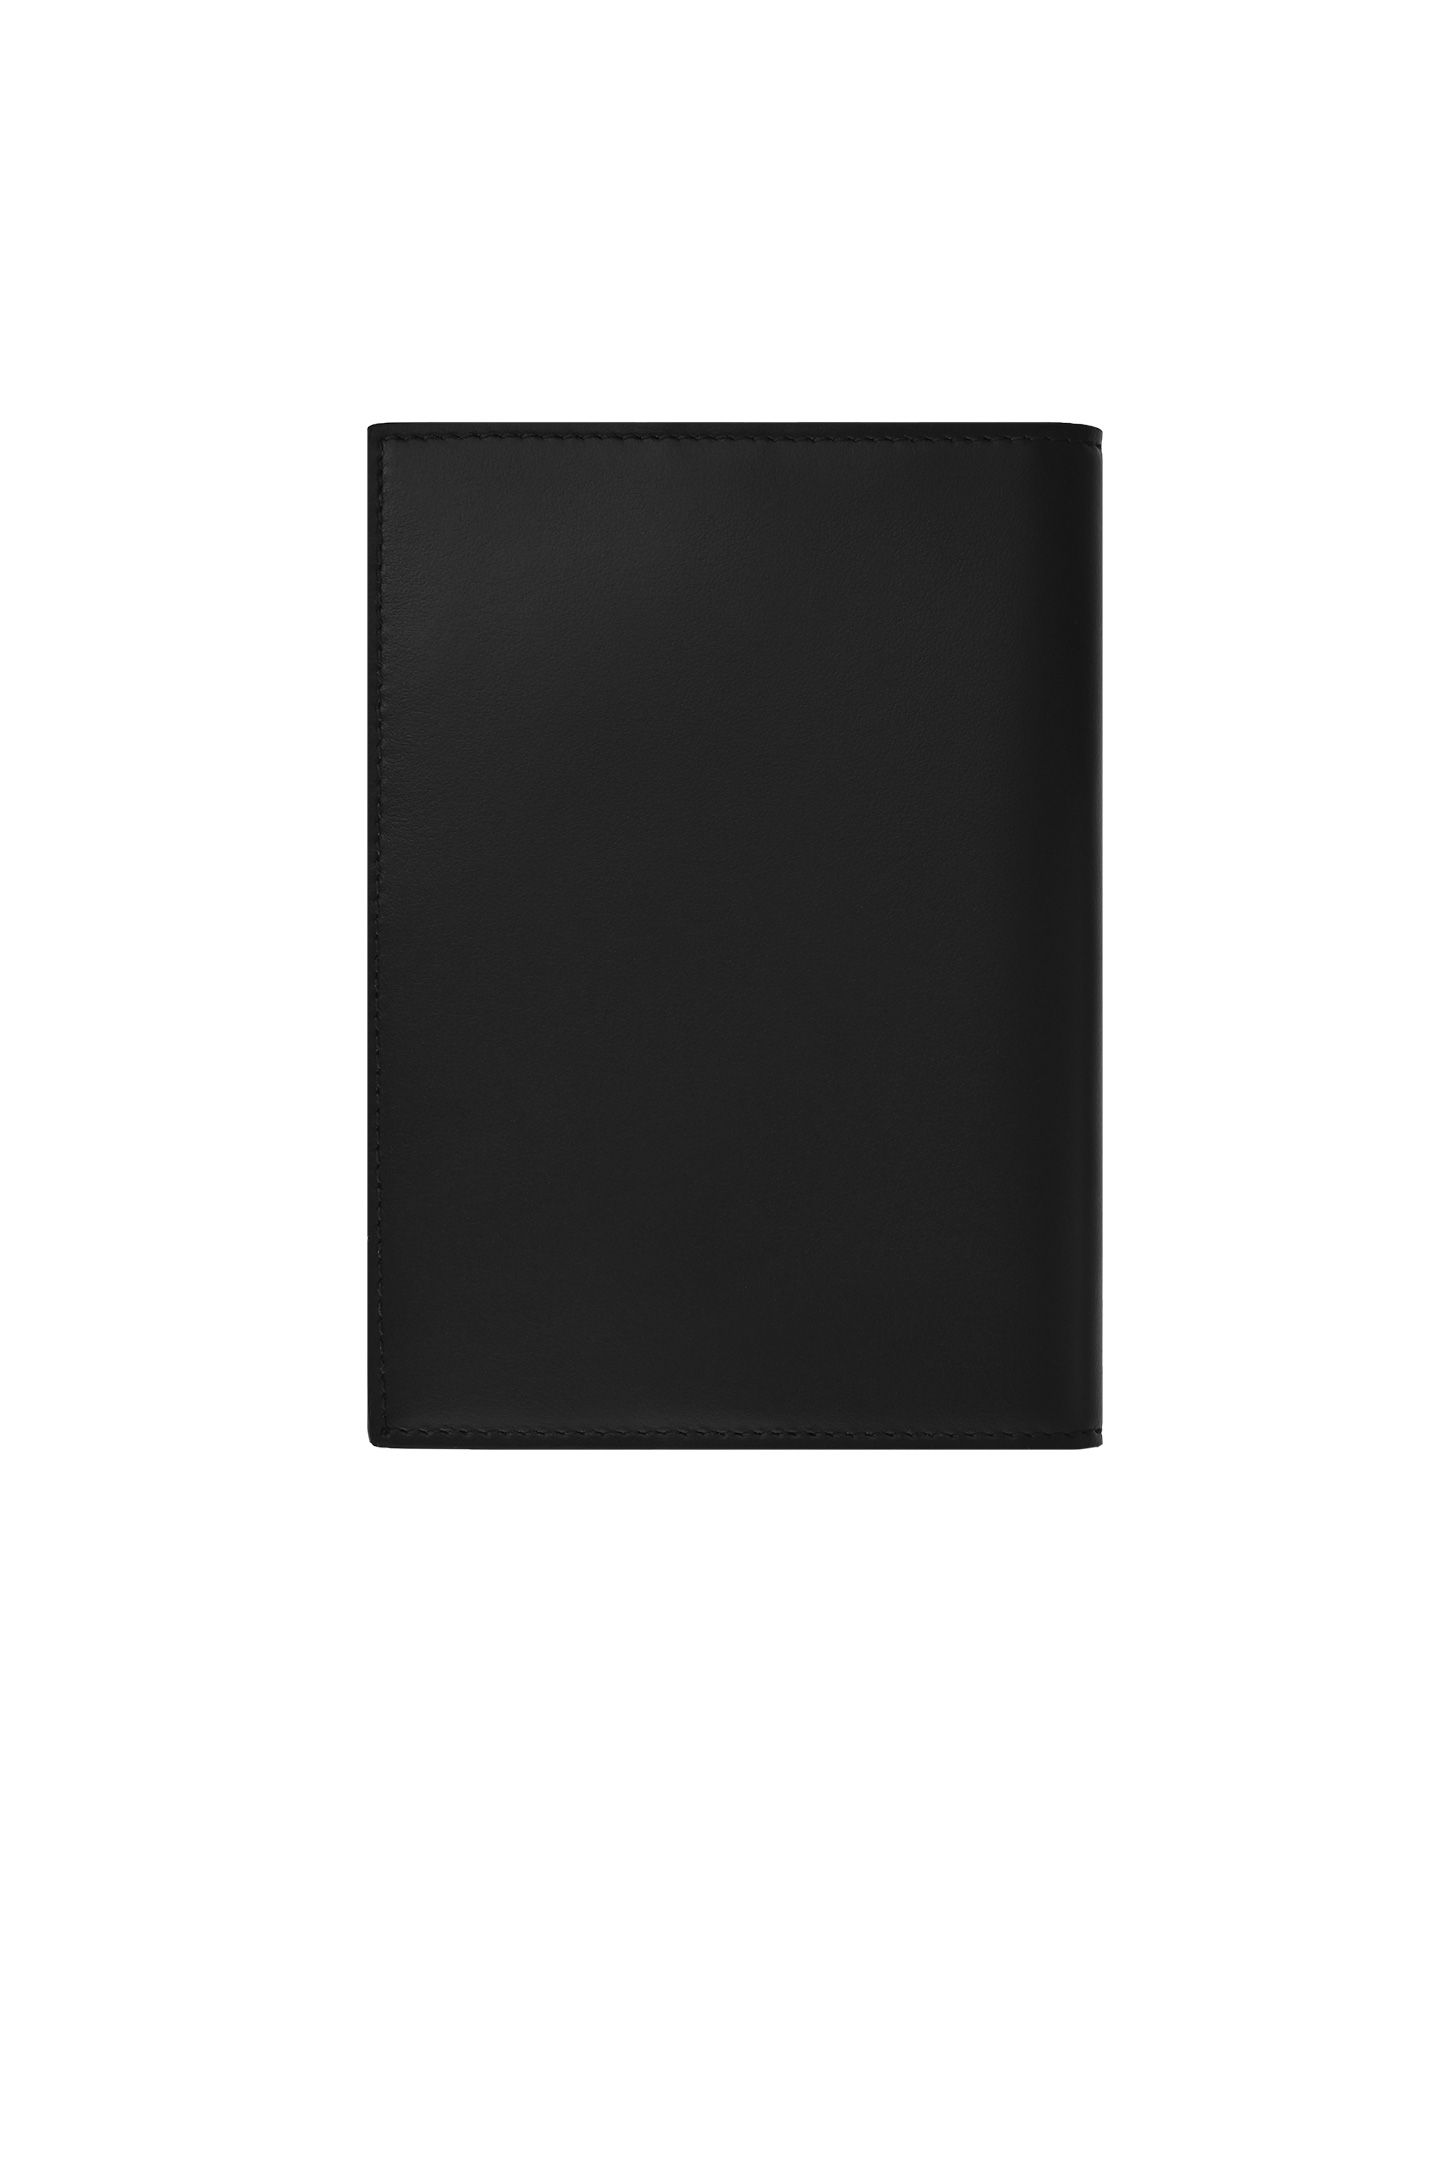 Обложка для паспорта DOLCE & GABBANA BP2215 AG218, цвет: Черный, Мужской